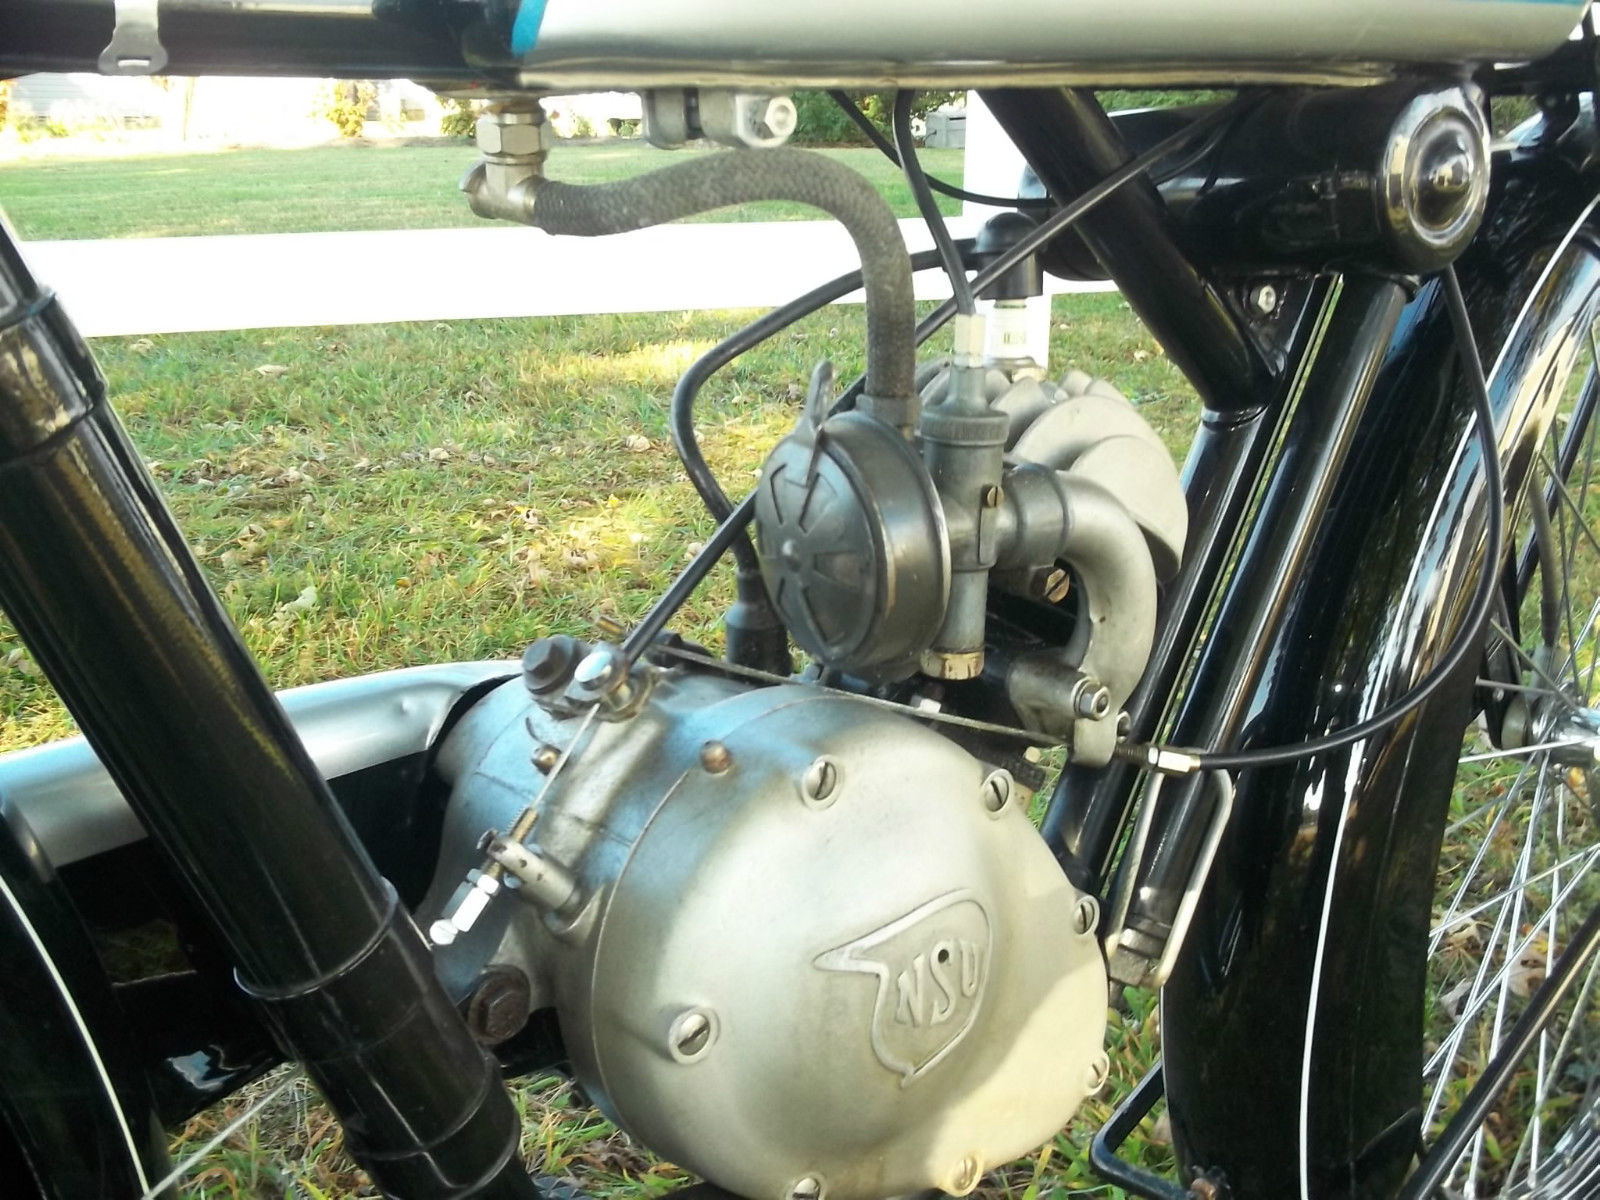 NSU Quick - 1936 - Engine and Carburettor.